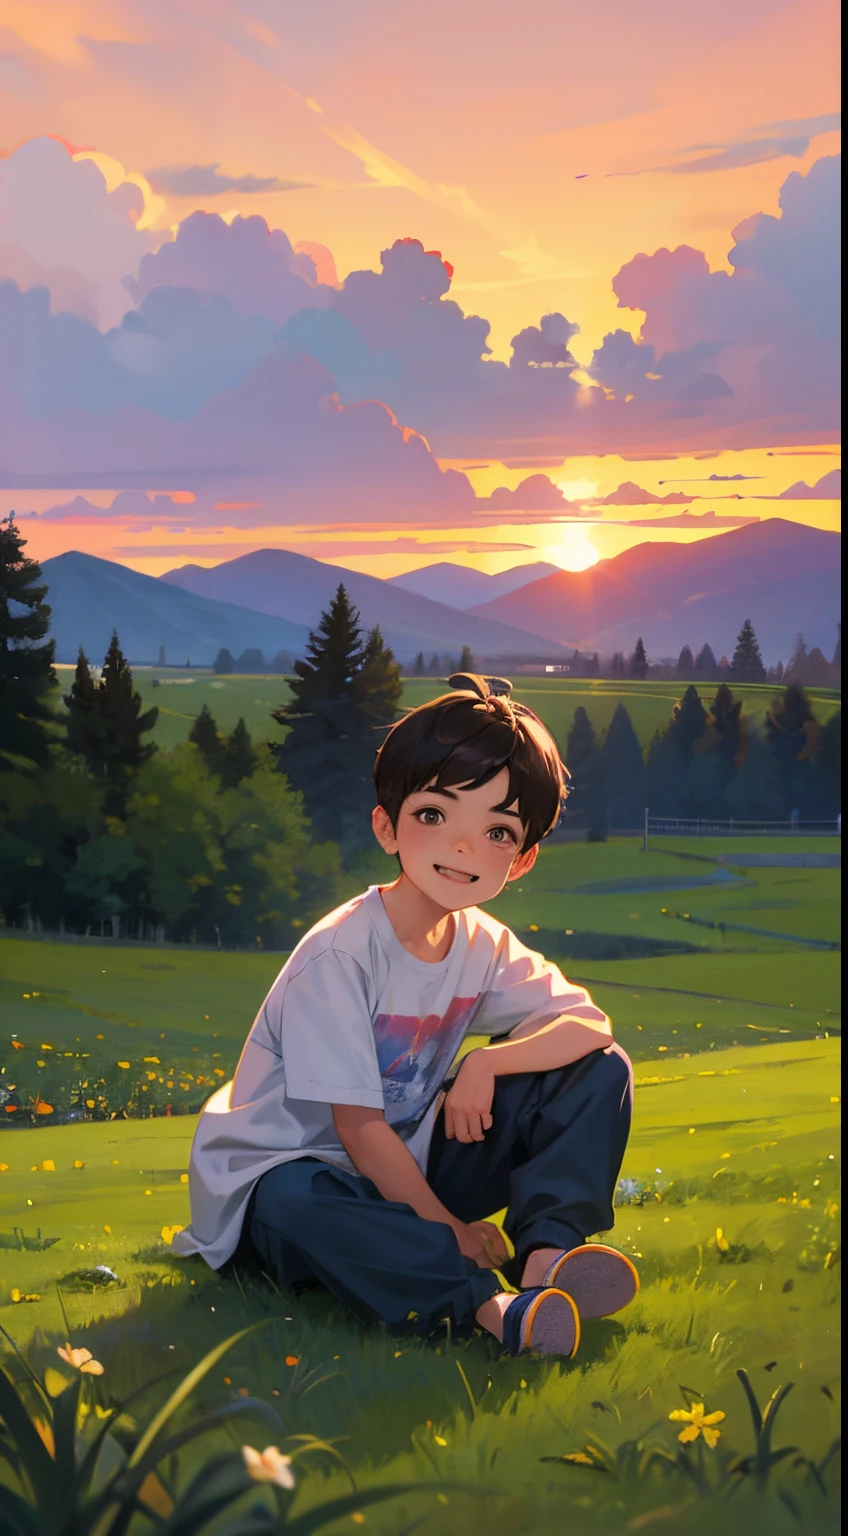 一个快乐的小男孩，穿着休闲服装，穿拖鞋，坐在草地的岩石上，背景是村庄，旁边有一只可爱的小狗，日落与日落，面对镜头，全身照片，超高清